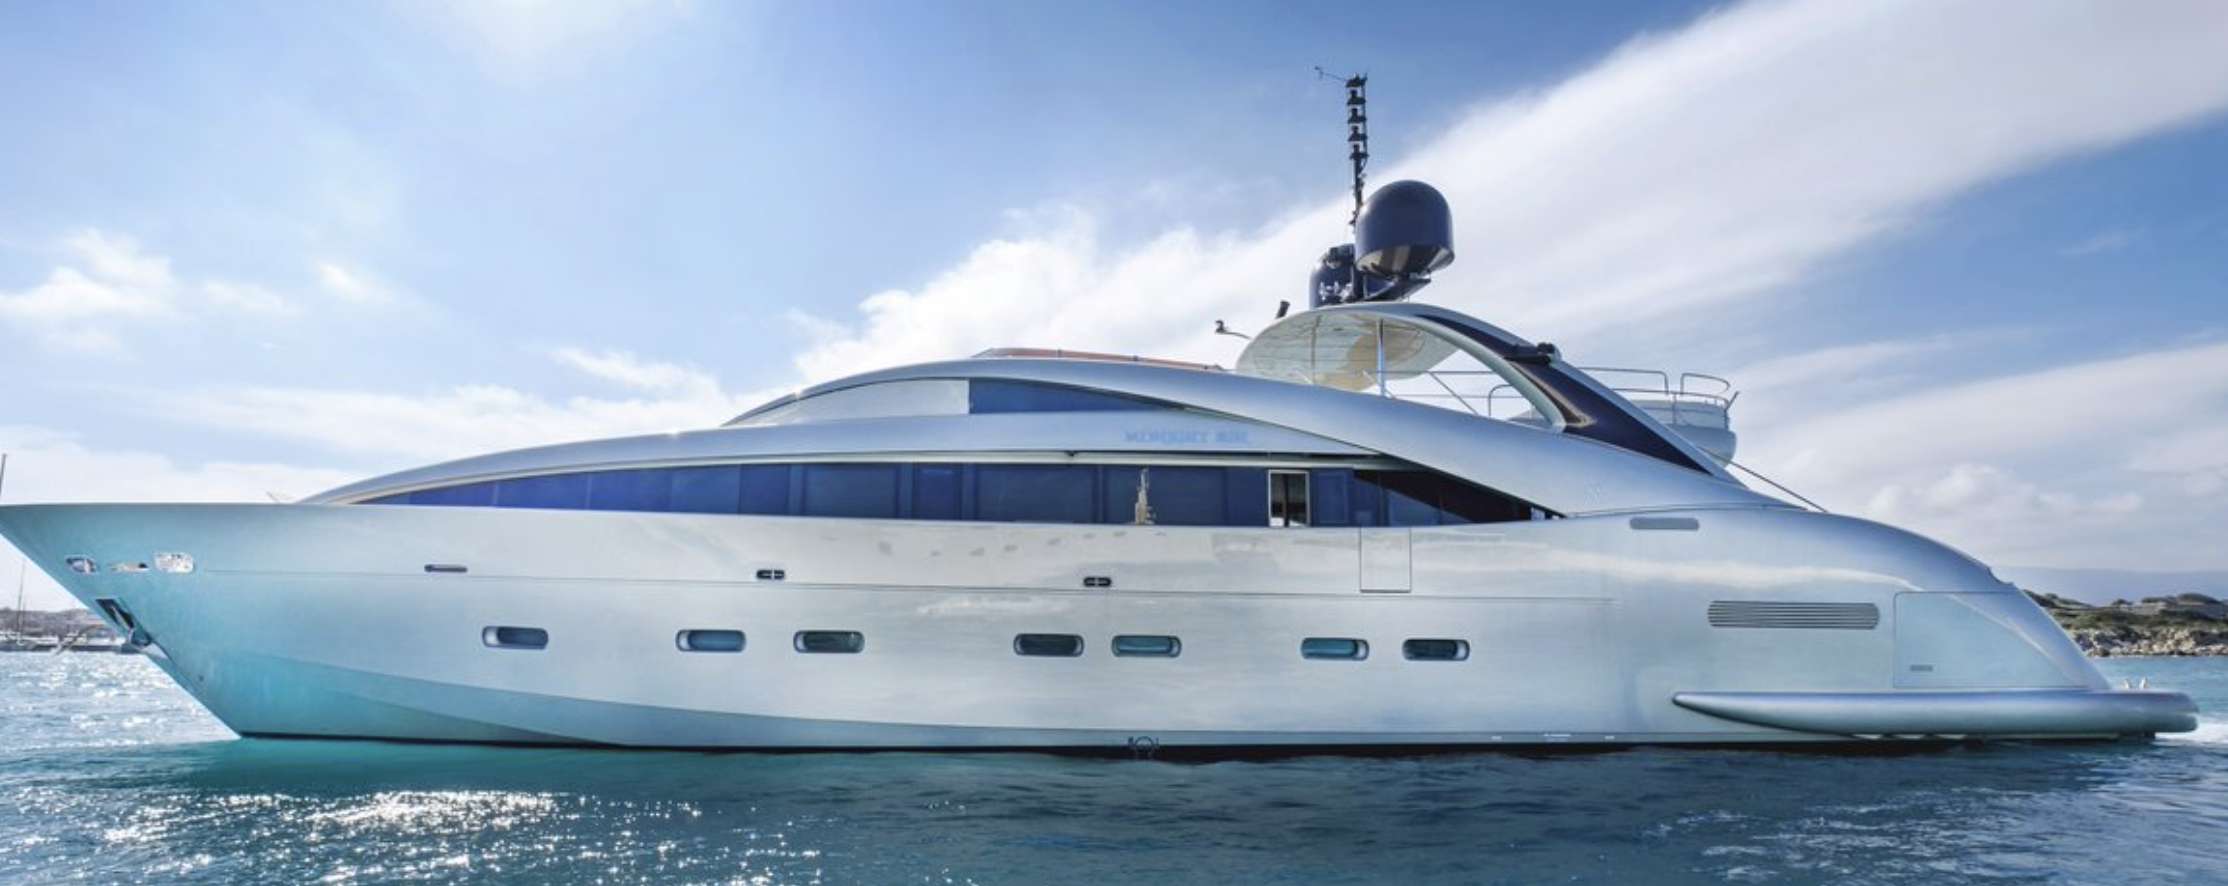 YCM 120 - Yacht Charter Valencia & Boat hire in Riviera, Corsica, Sardinia, Spain, Balearics, Caribbean 4